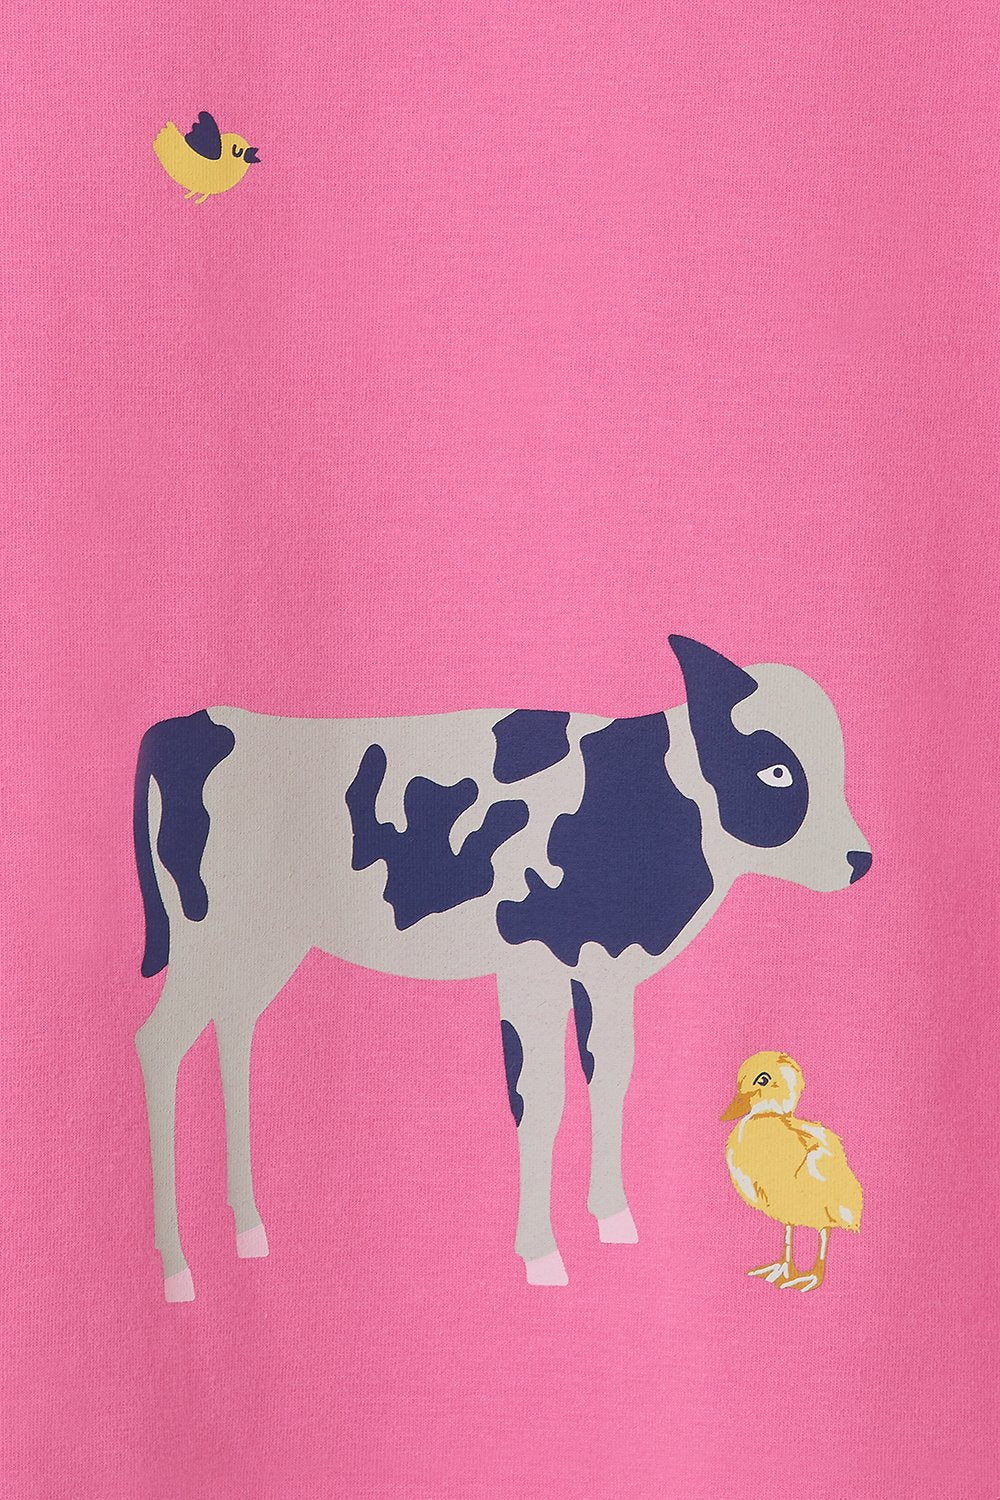 Lighthouse Girls Causeway Short Sleeve Tee Shirt Calf / Chick Print @ millscountrystore.com